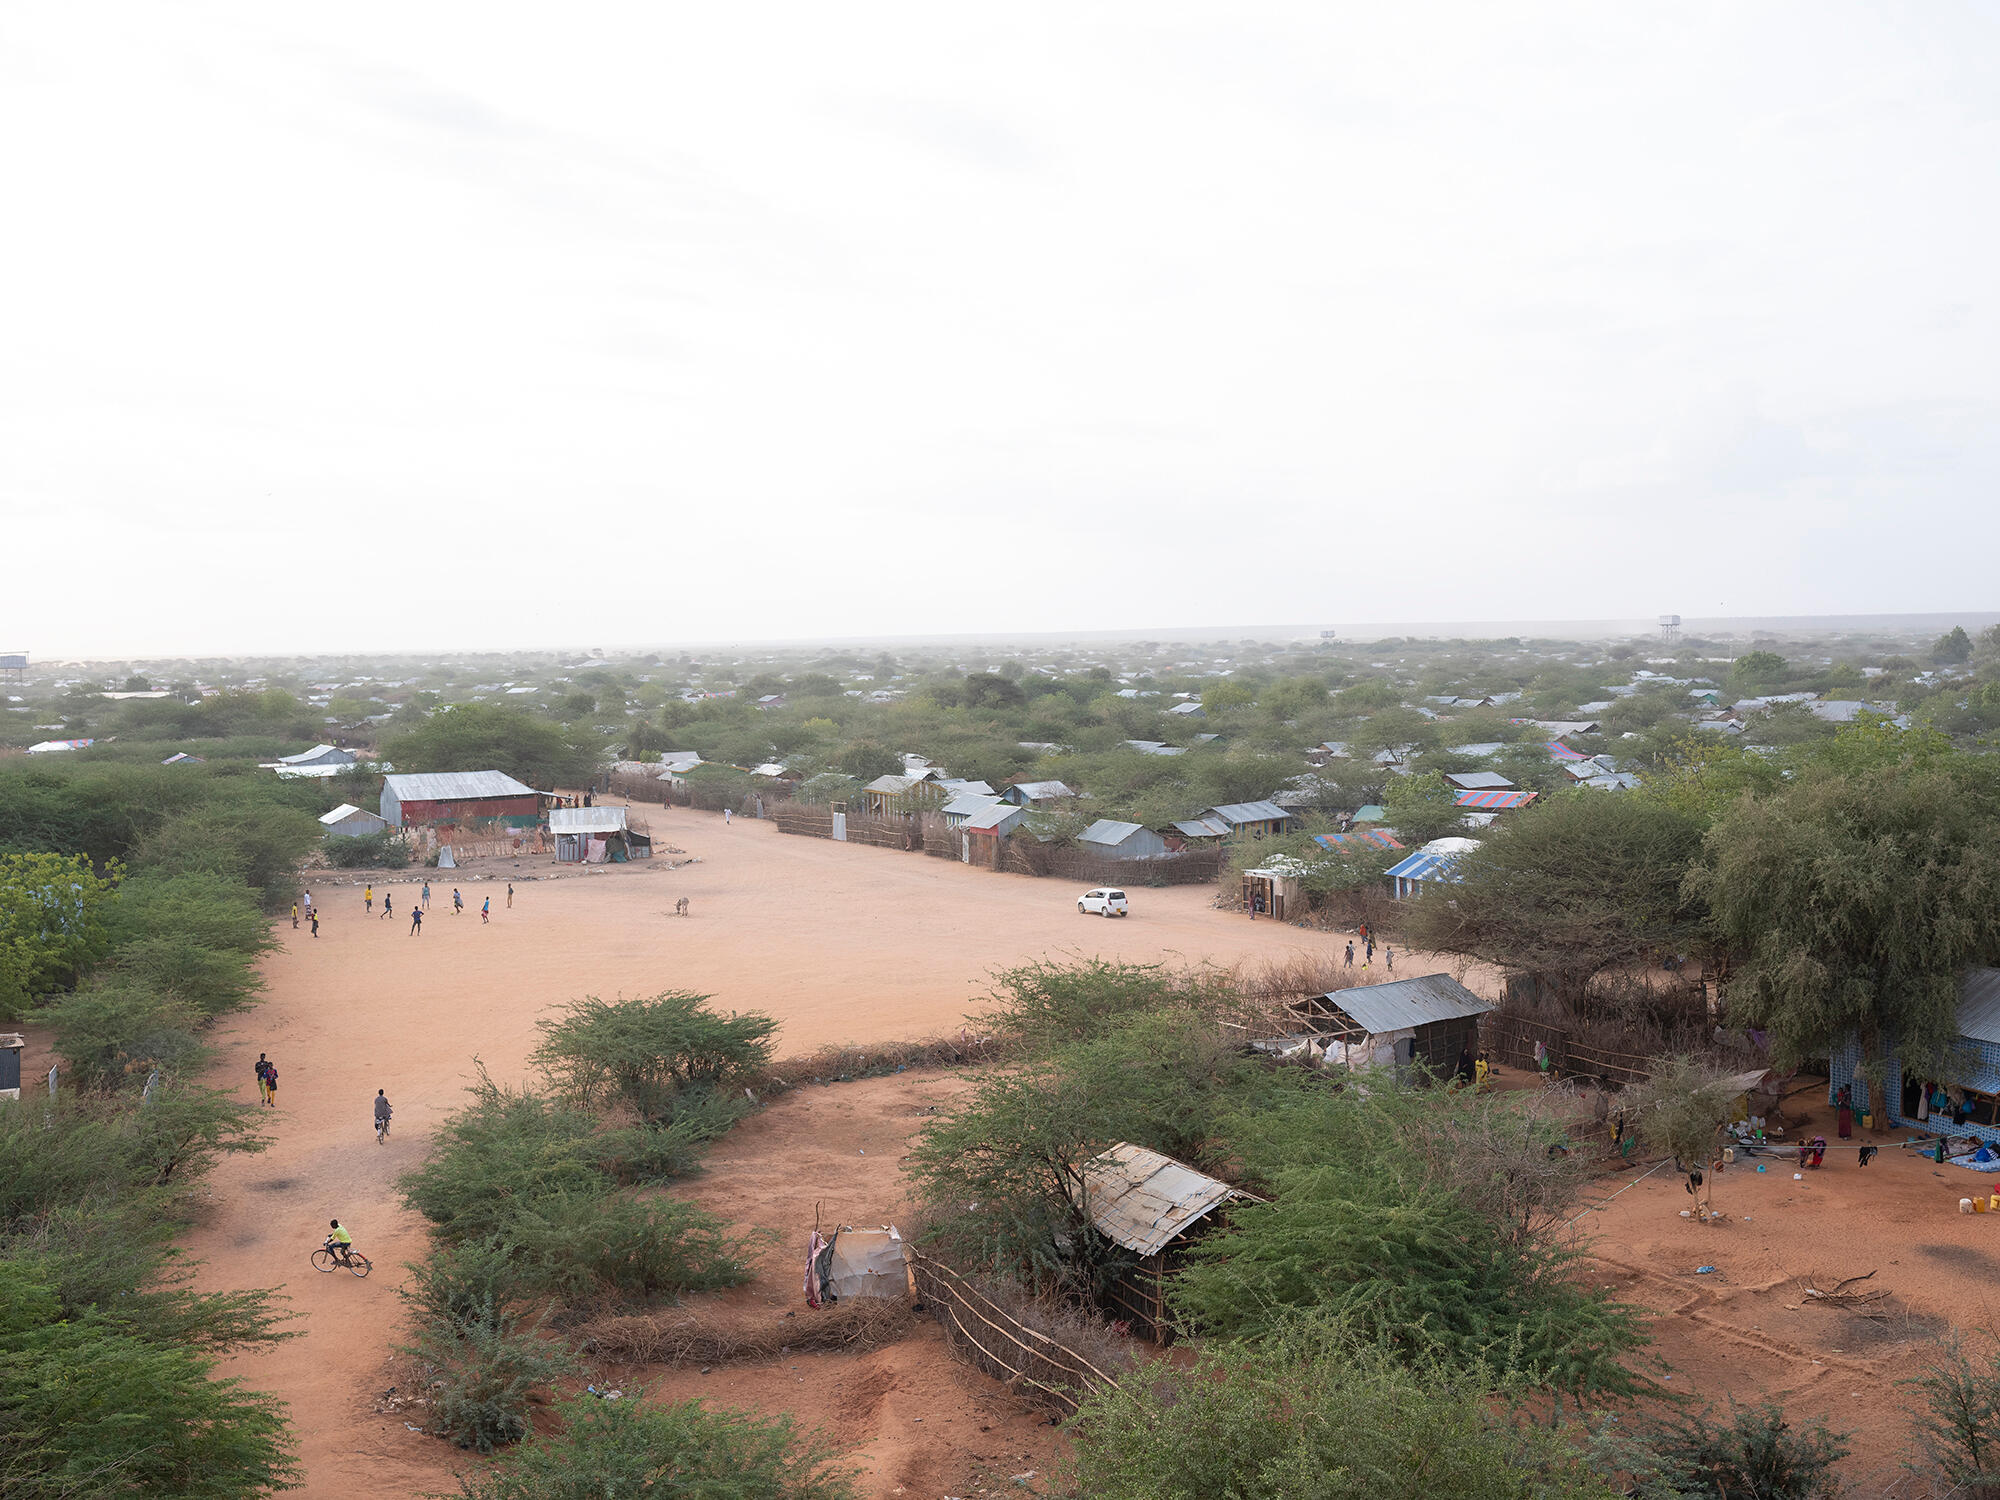 Solusi mendesak diperlukan bagi para pengungsi di Dadaab, Kenya, saat kamp-kamp ditutup